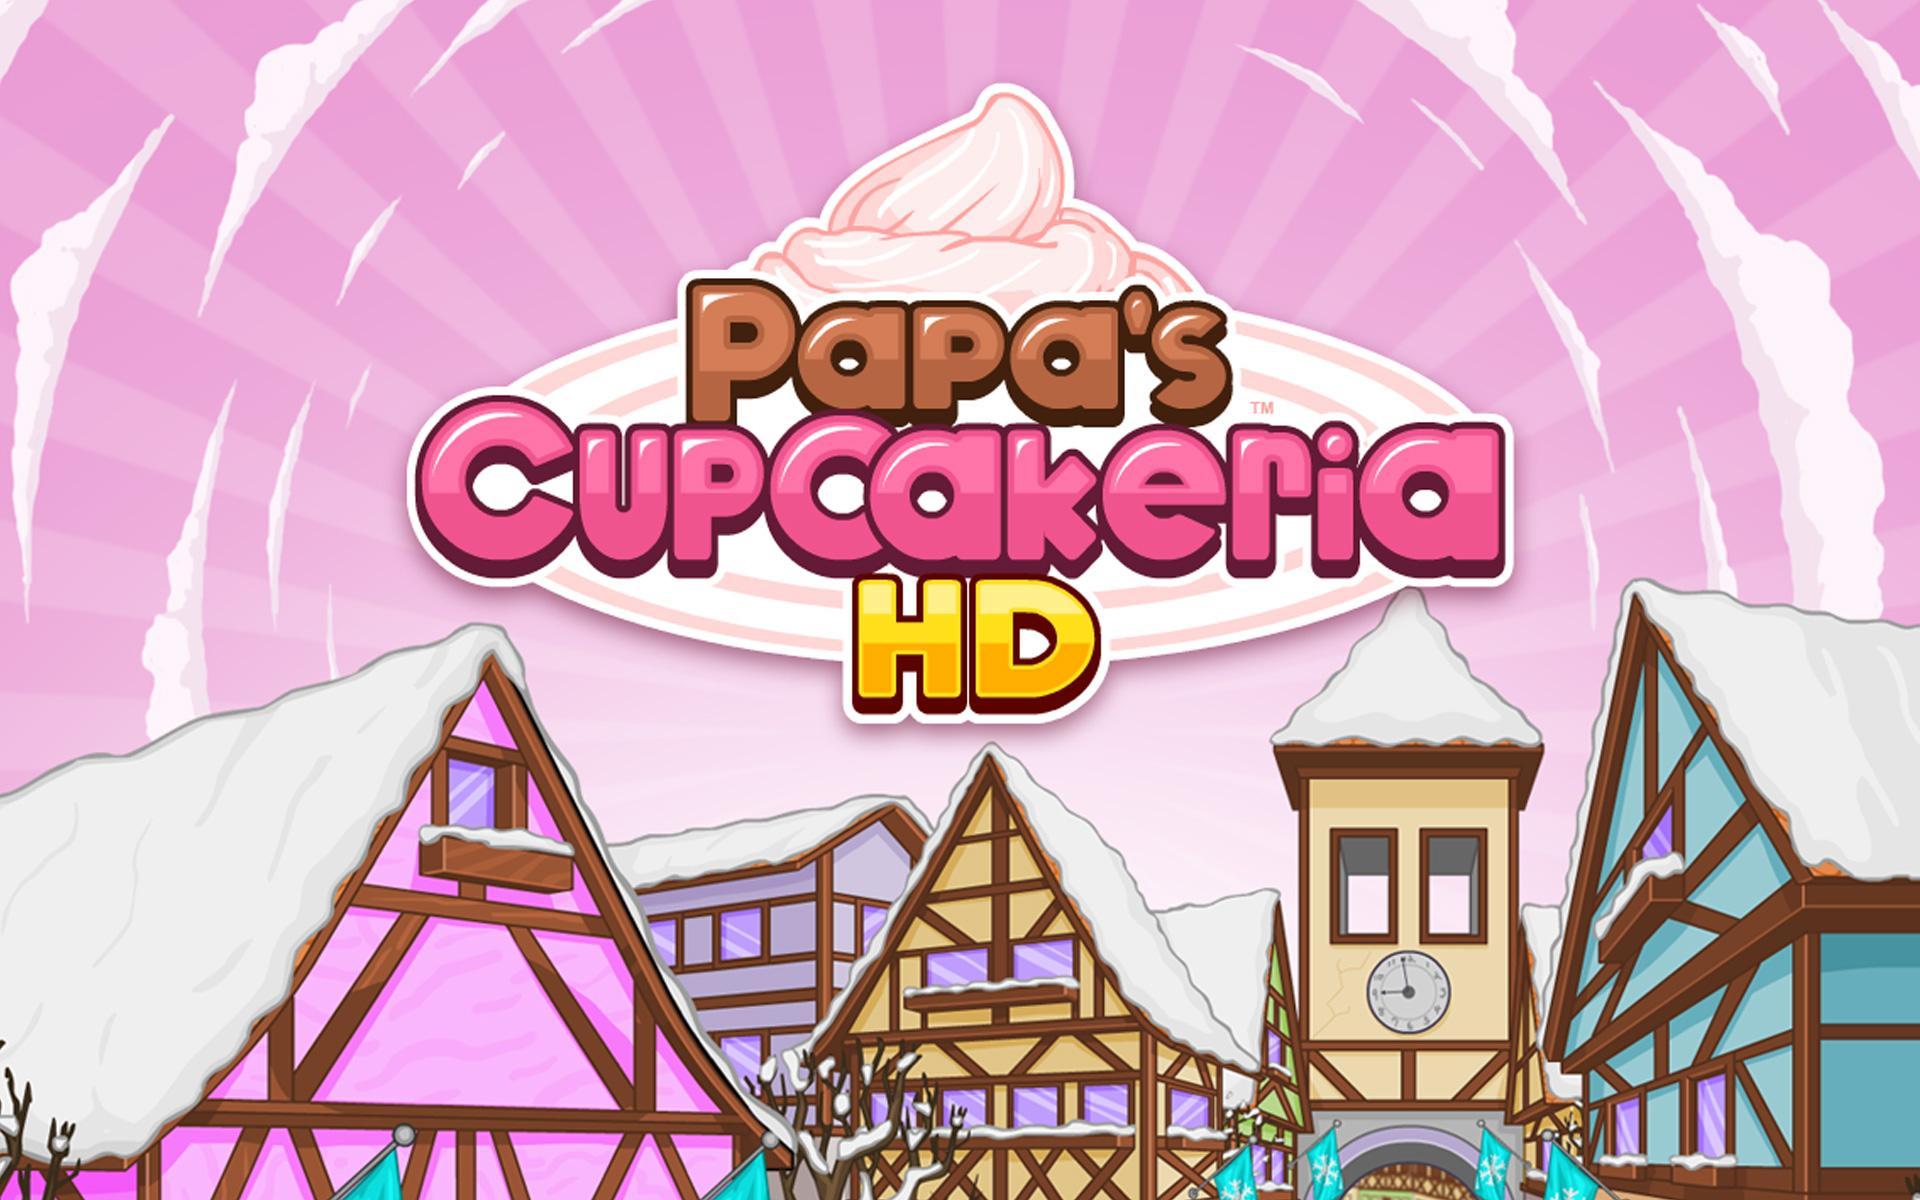 Papas cupcakeria to go. Papa's Cupcakeria. Papa's Cupcakeria HD. Papas Cupcakeria играть. Papa Louie Cupcakeria.